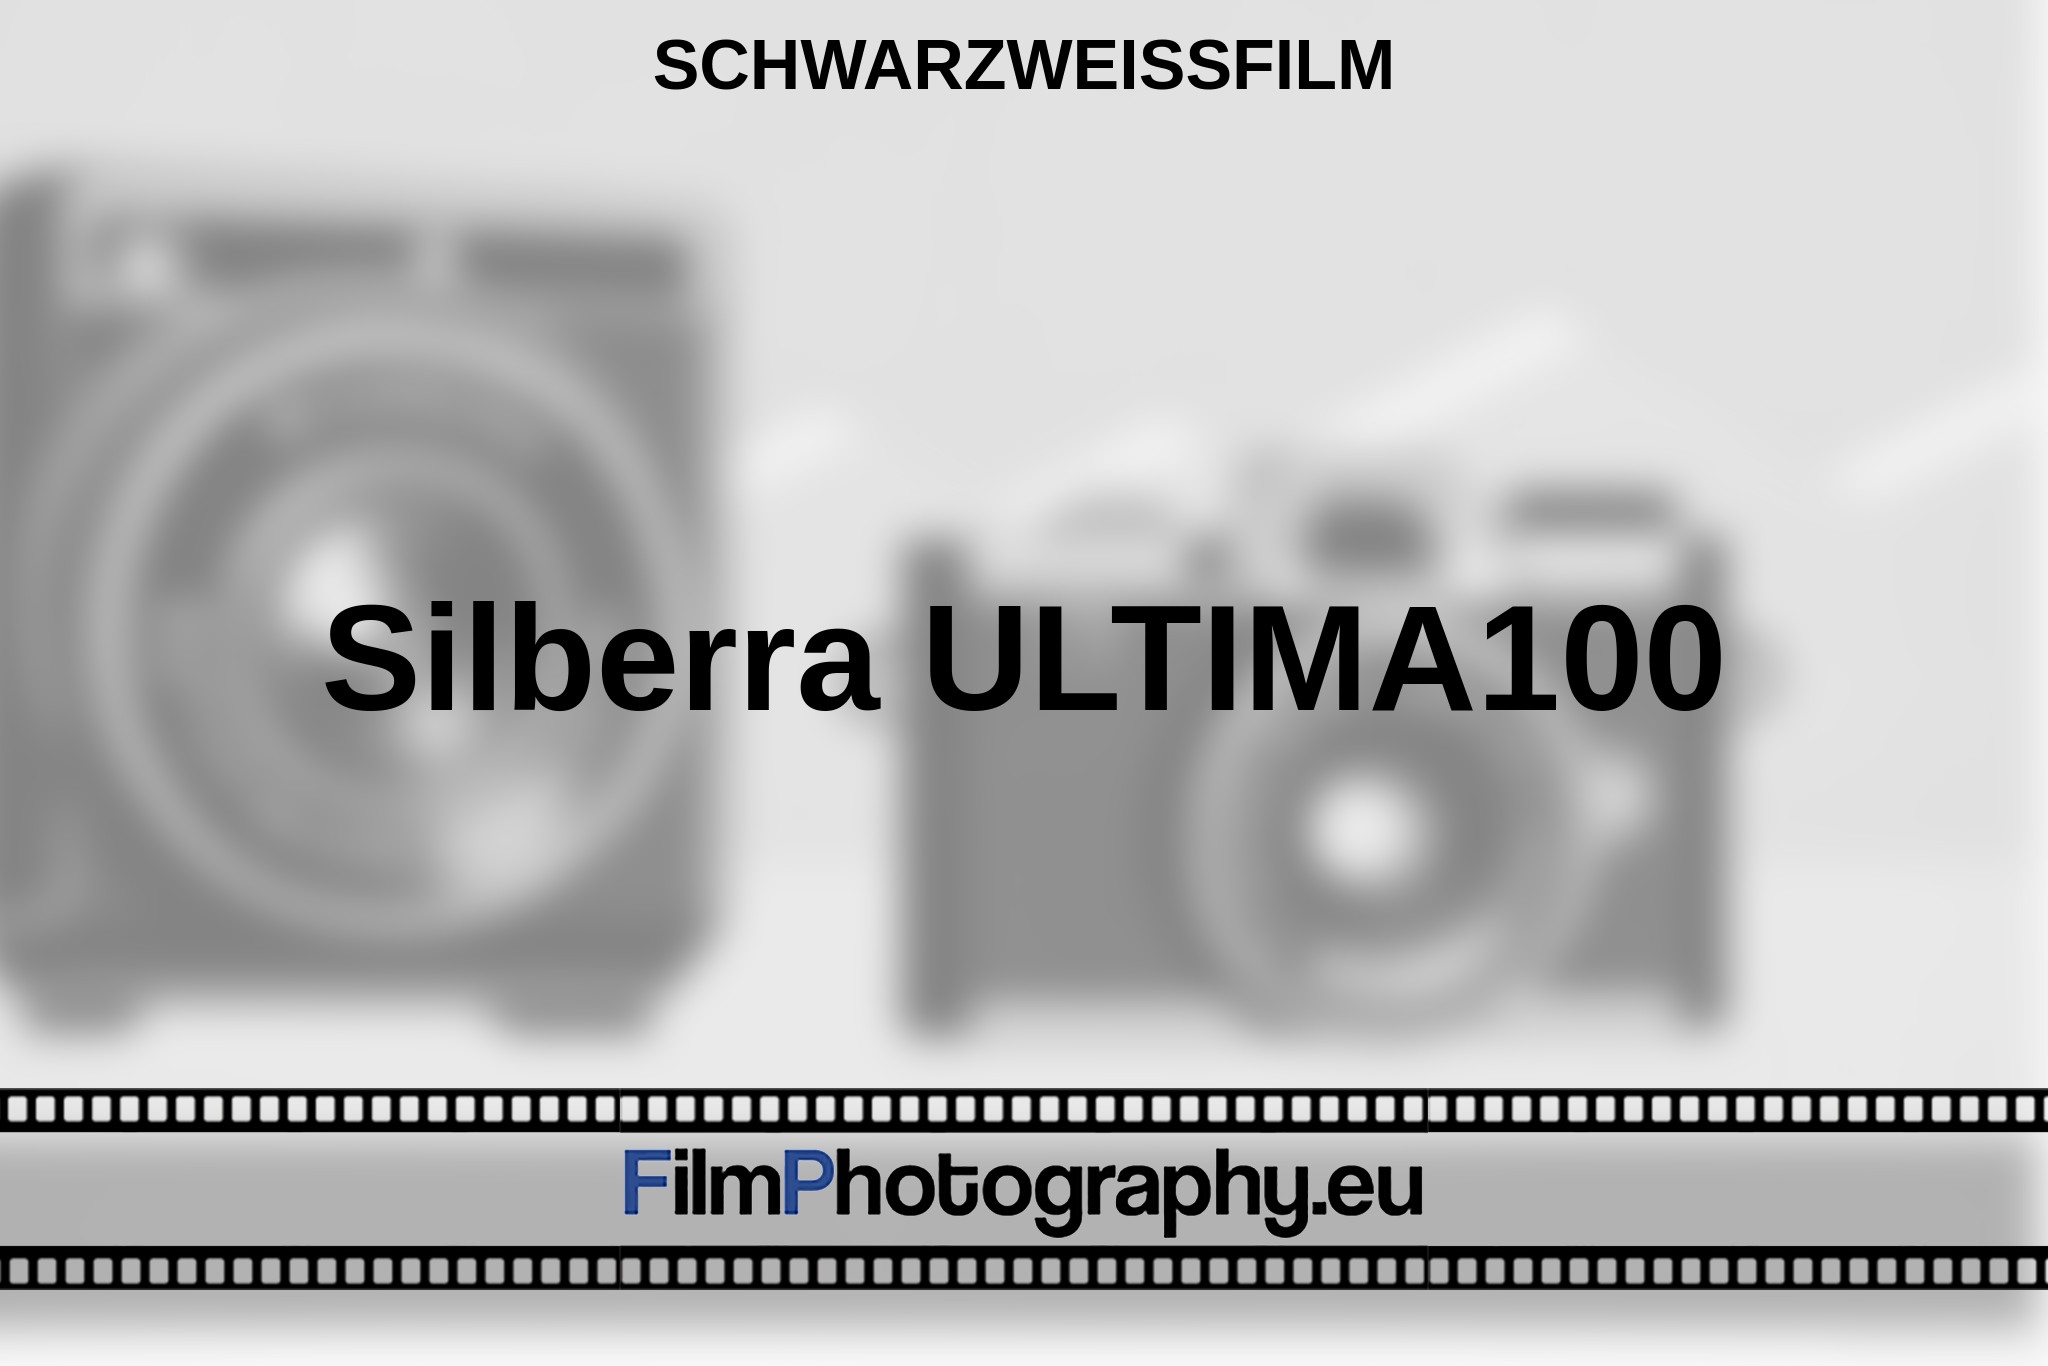 silberra-ultima100-schwarzweißfilm-bnv.jpg